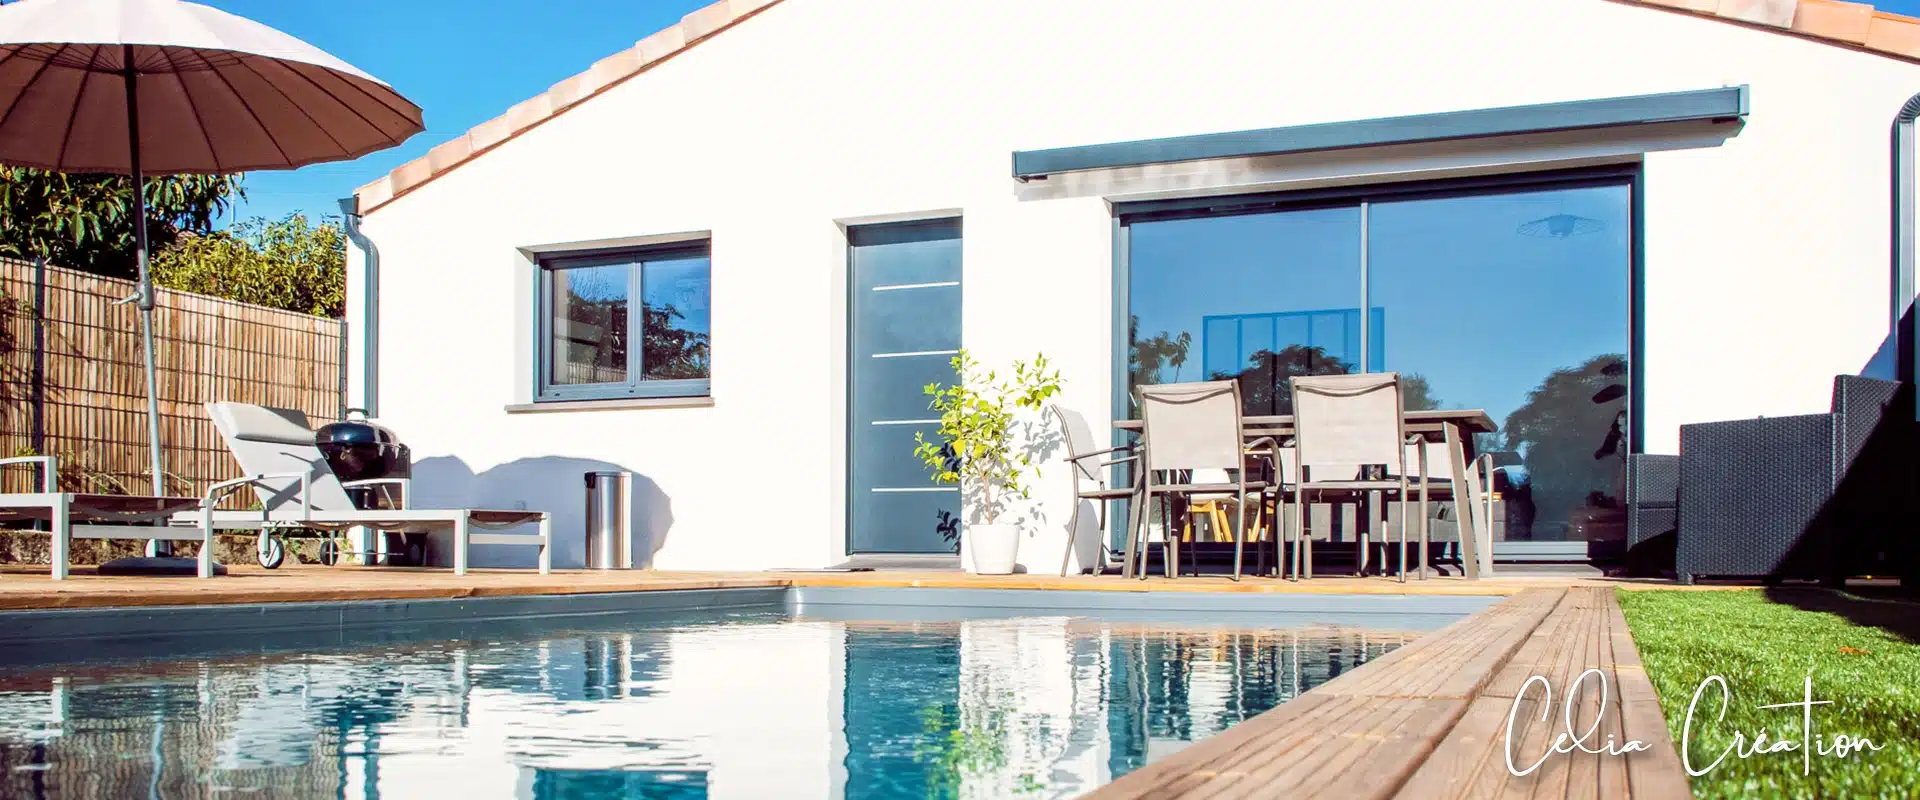 Charmante petite maison moderne équipée d'une piscine à Tournefeuille, construite par CELIA Création, alliant confort et design épuré.